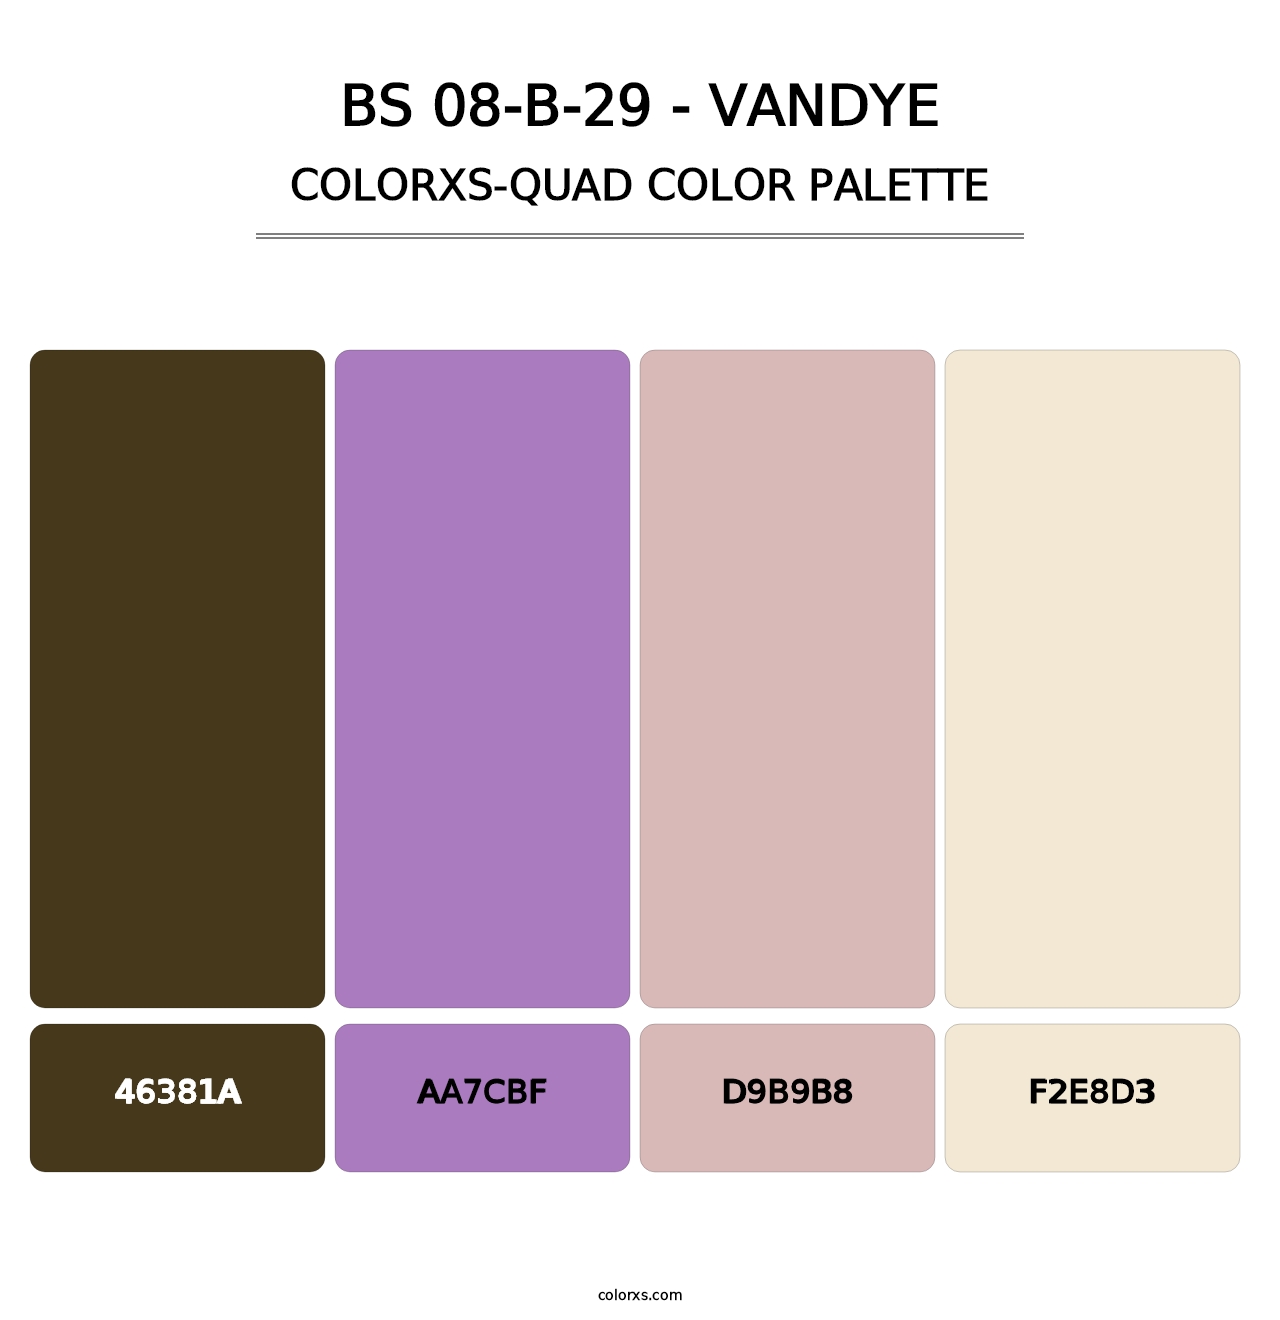 BS 08-B-29 - Vandye - Colorxs Quad Palette